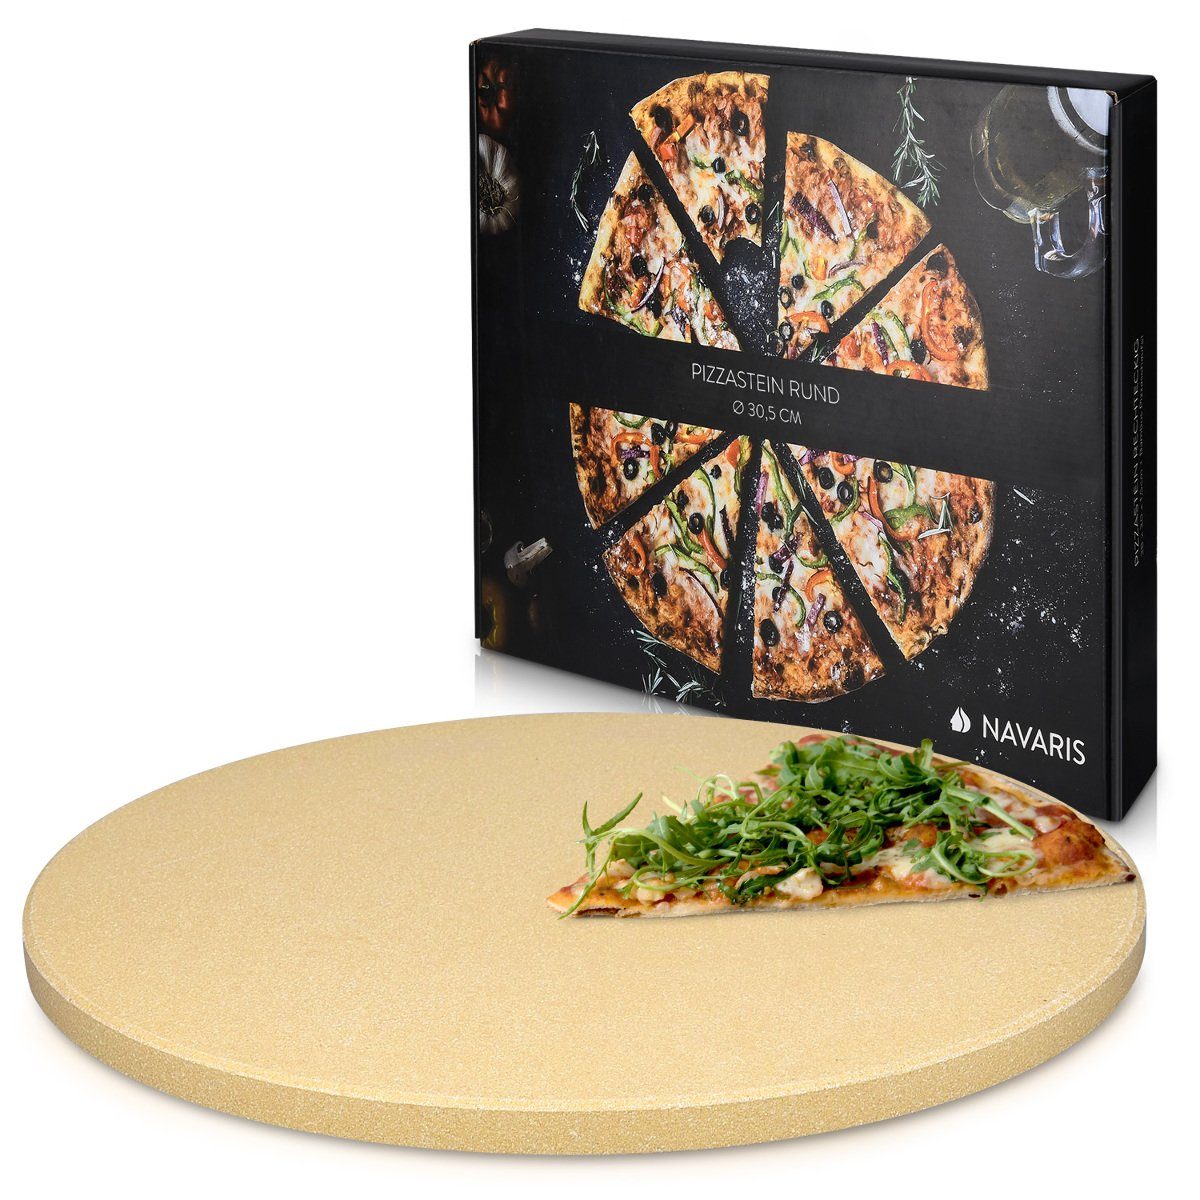 Navaris Pizzastein Pizzastein Cordierit XL für Ofen & Grill - Ø30,5cm, Korderit-Keramik